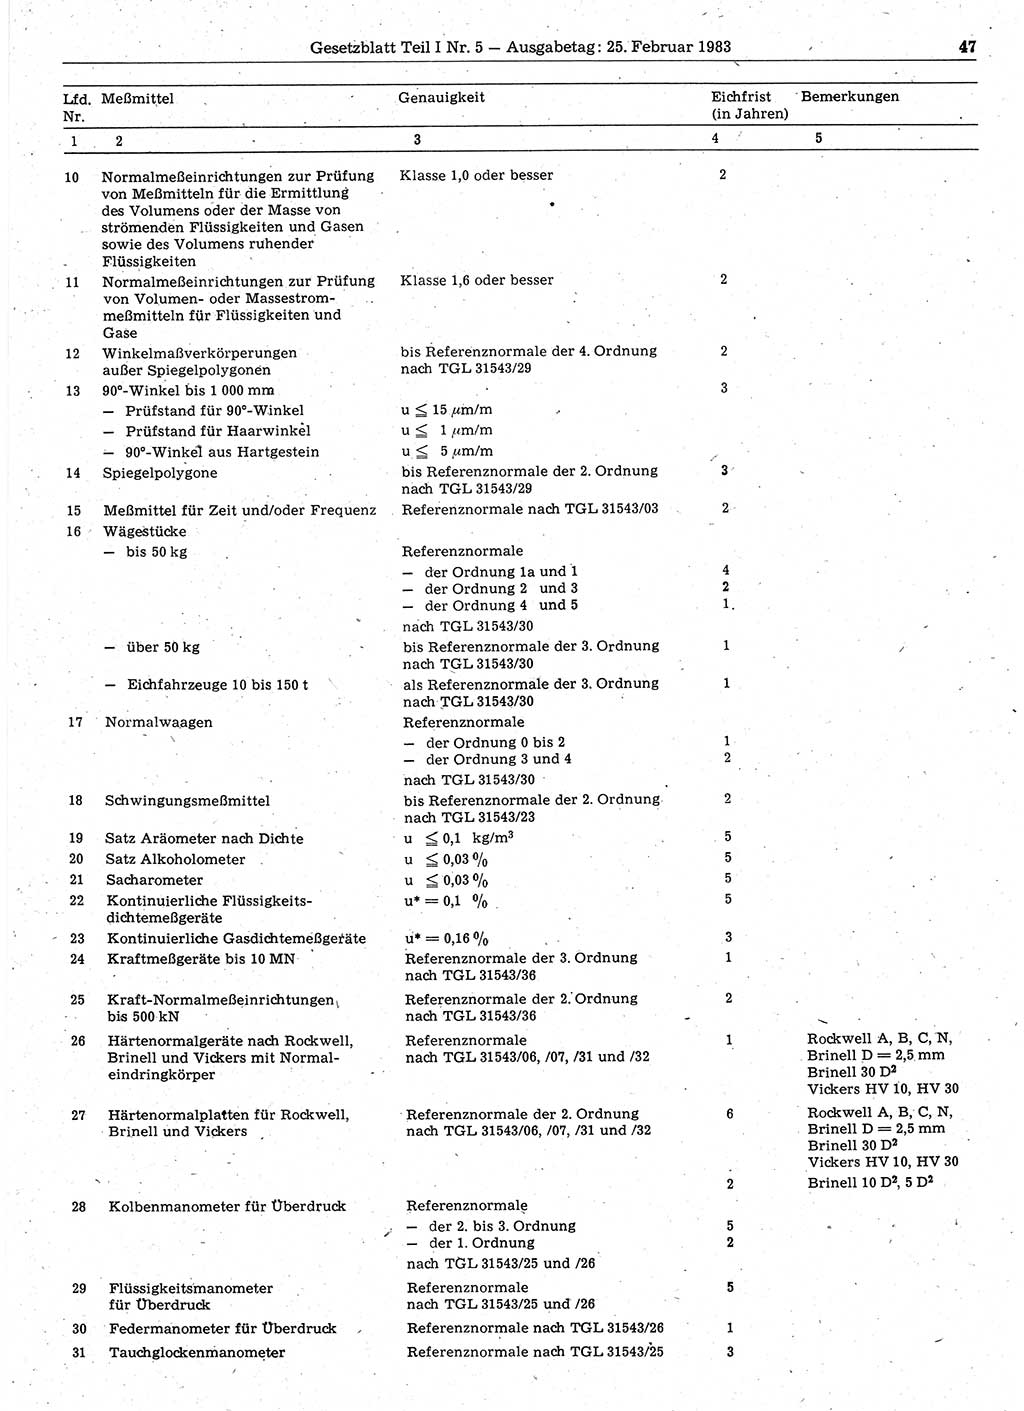 Gesetzblatt (GBl.) der Deutschen Demokratischen Republik (DDR) Teil Ⅰ 1983, Seite 47 (GBl. DDR Ⅰ 1983, S. 47)